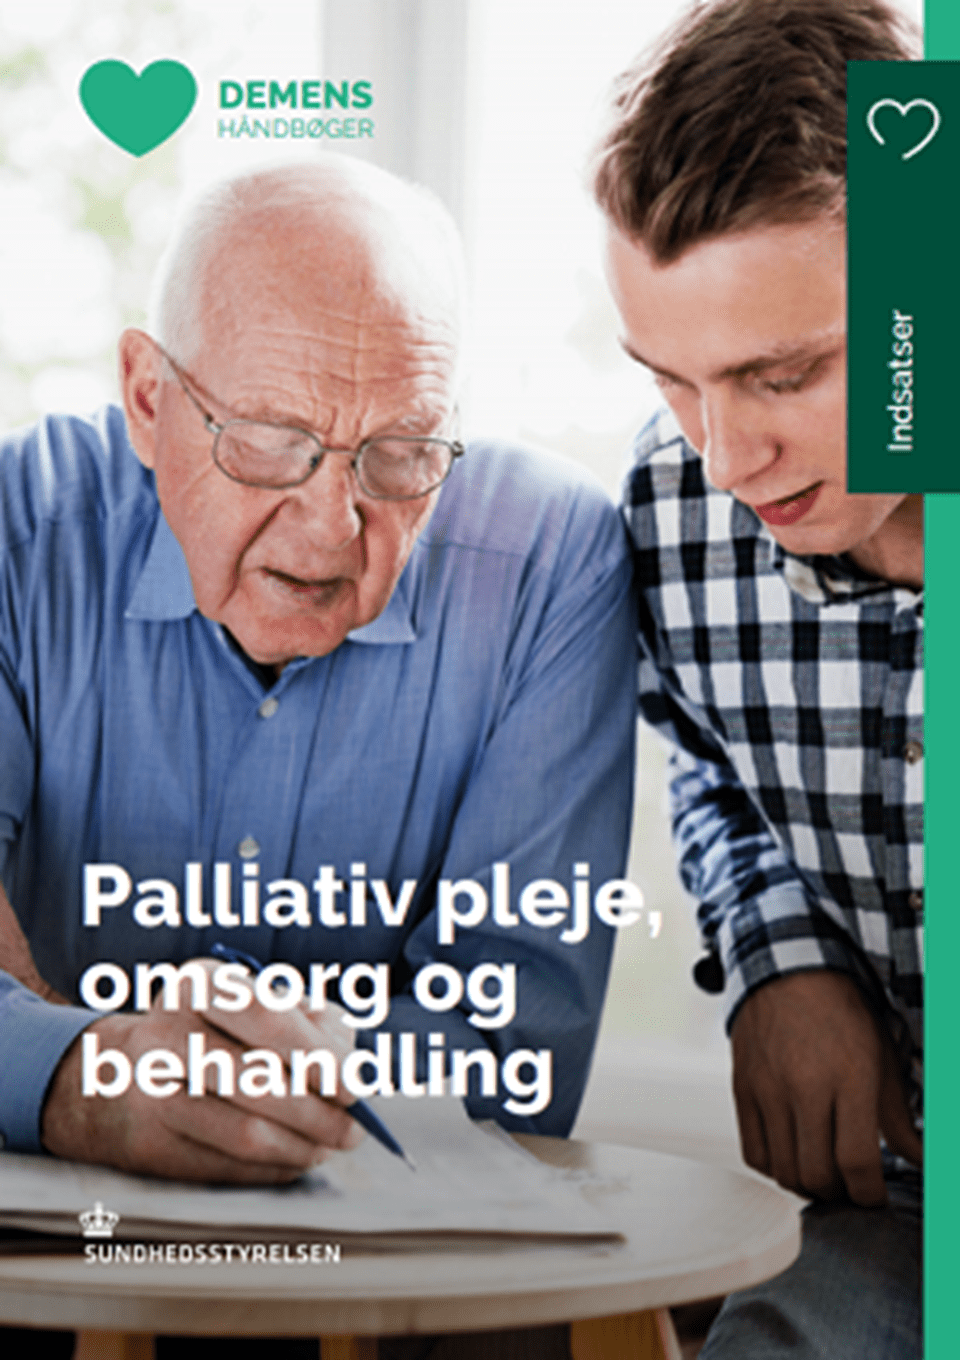 Demenshåndbog: Palliativ pleje, omsorg og behandling